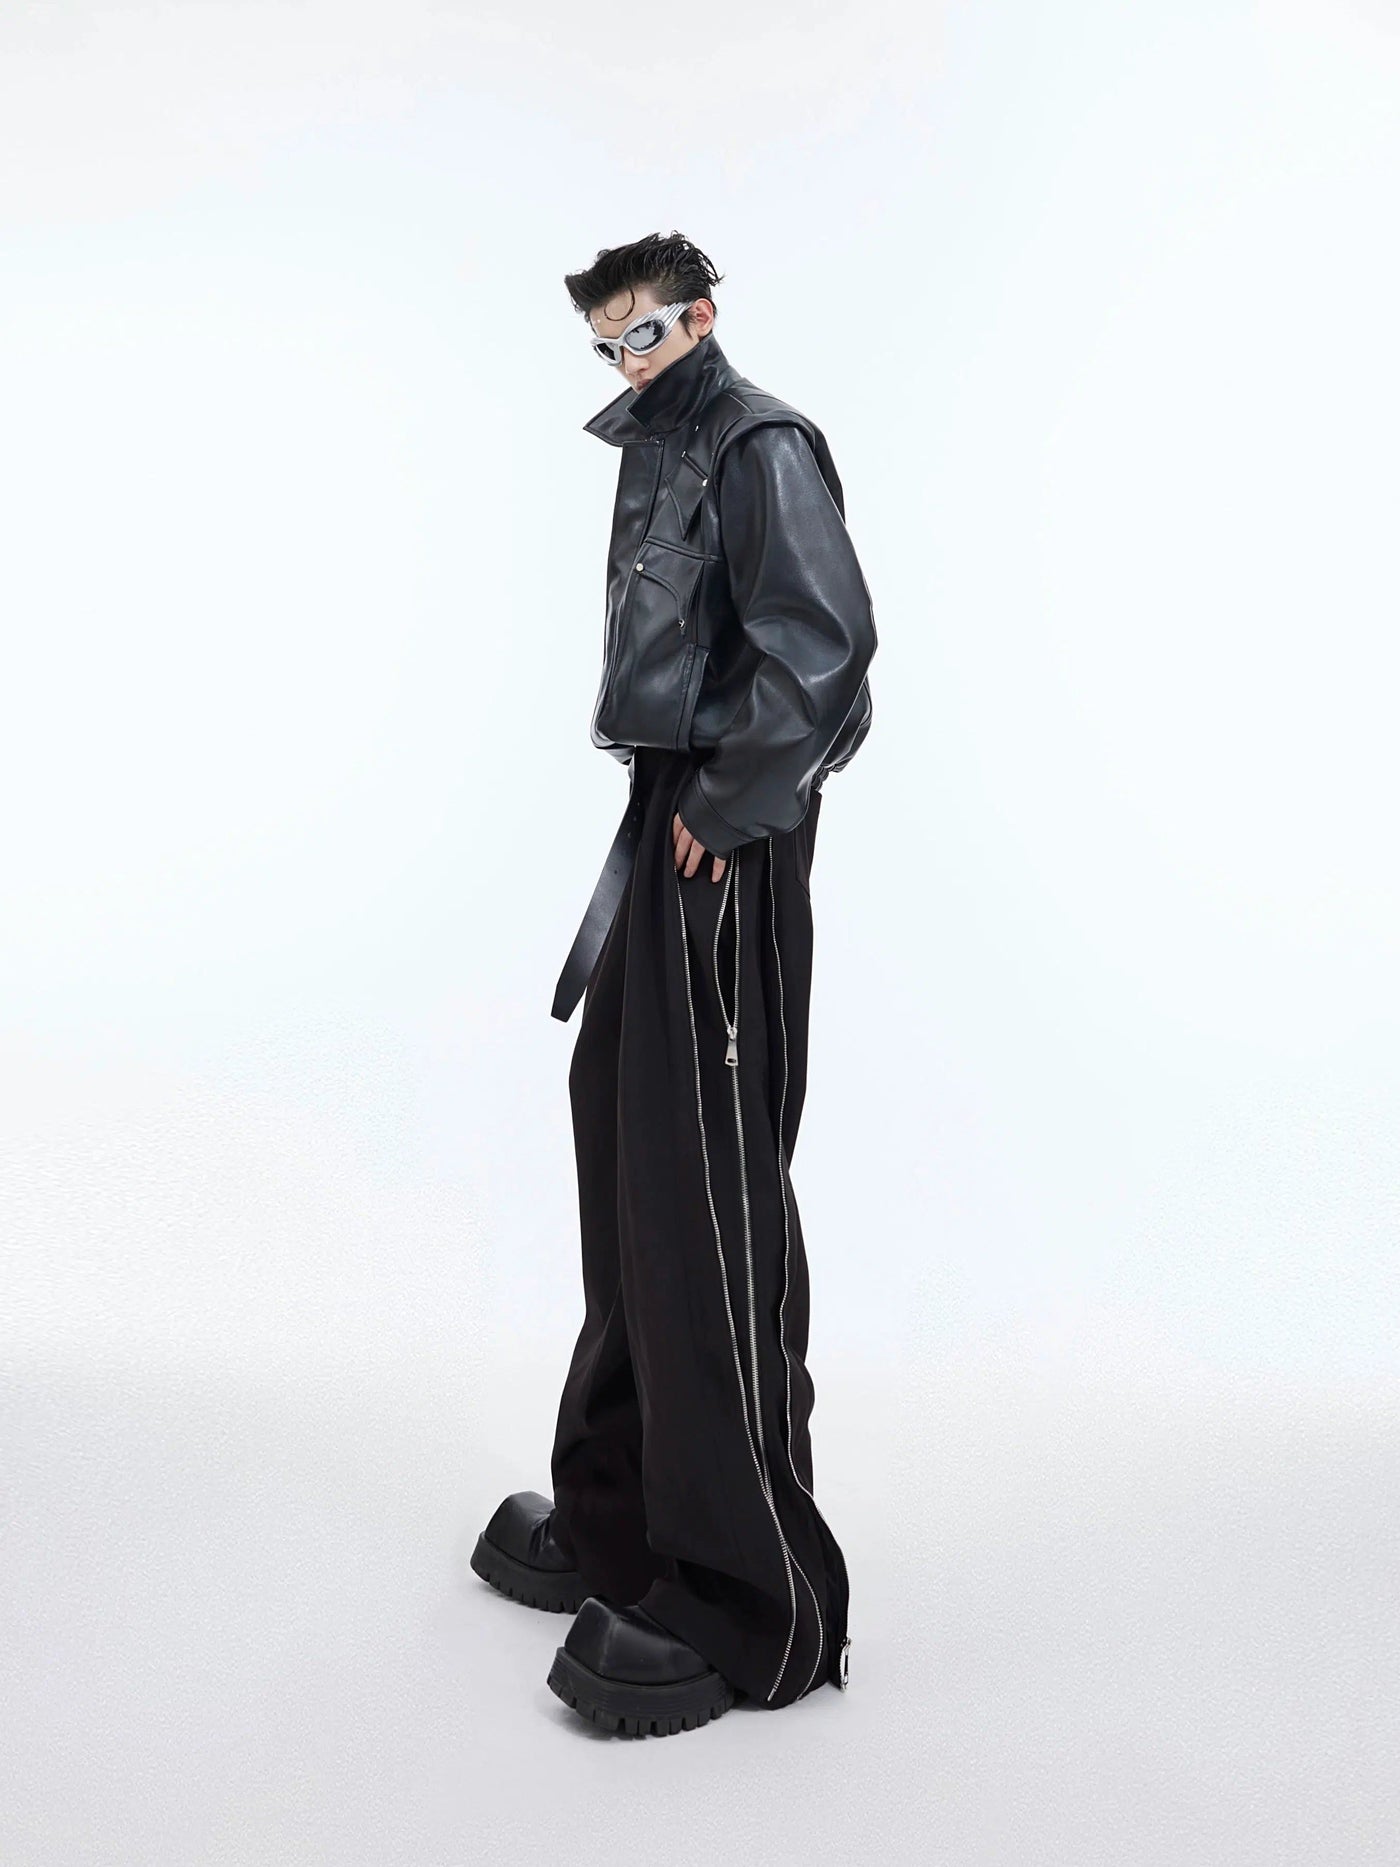 Multi-Zip Sides Pants Korean Street Fashion Pants By Argue Culture Shop Online at OH Vault